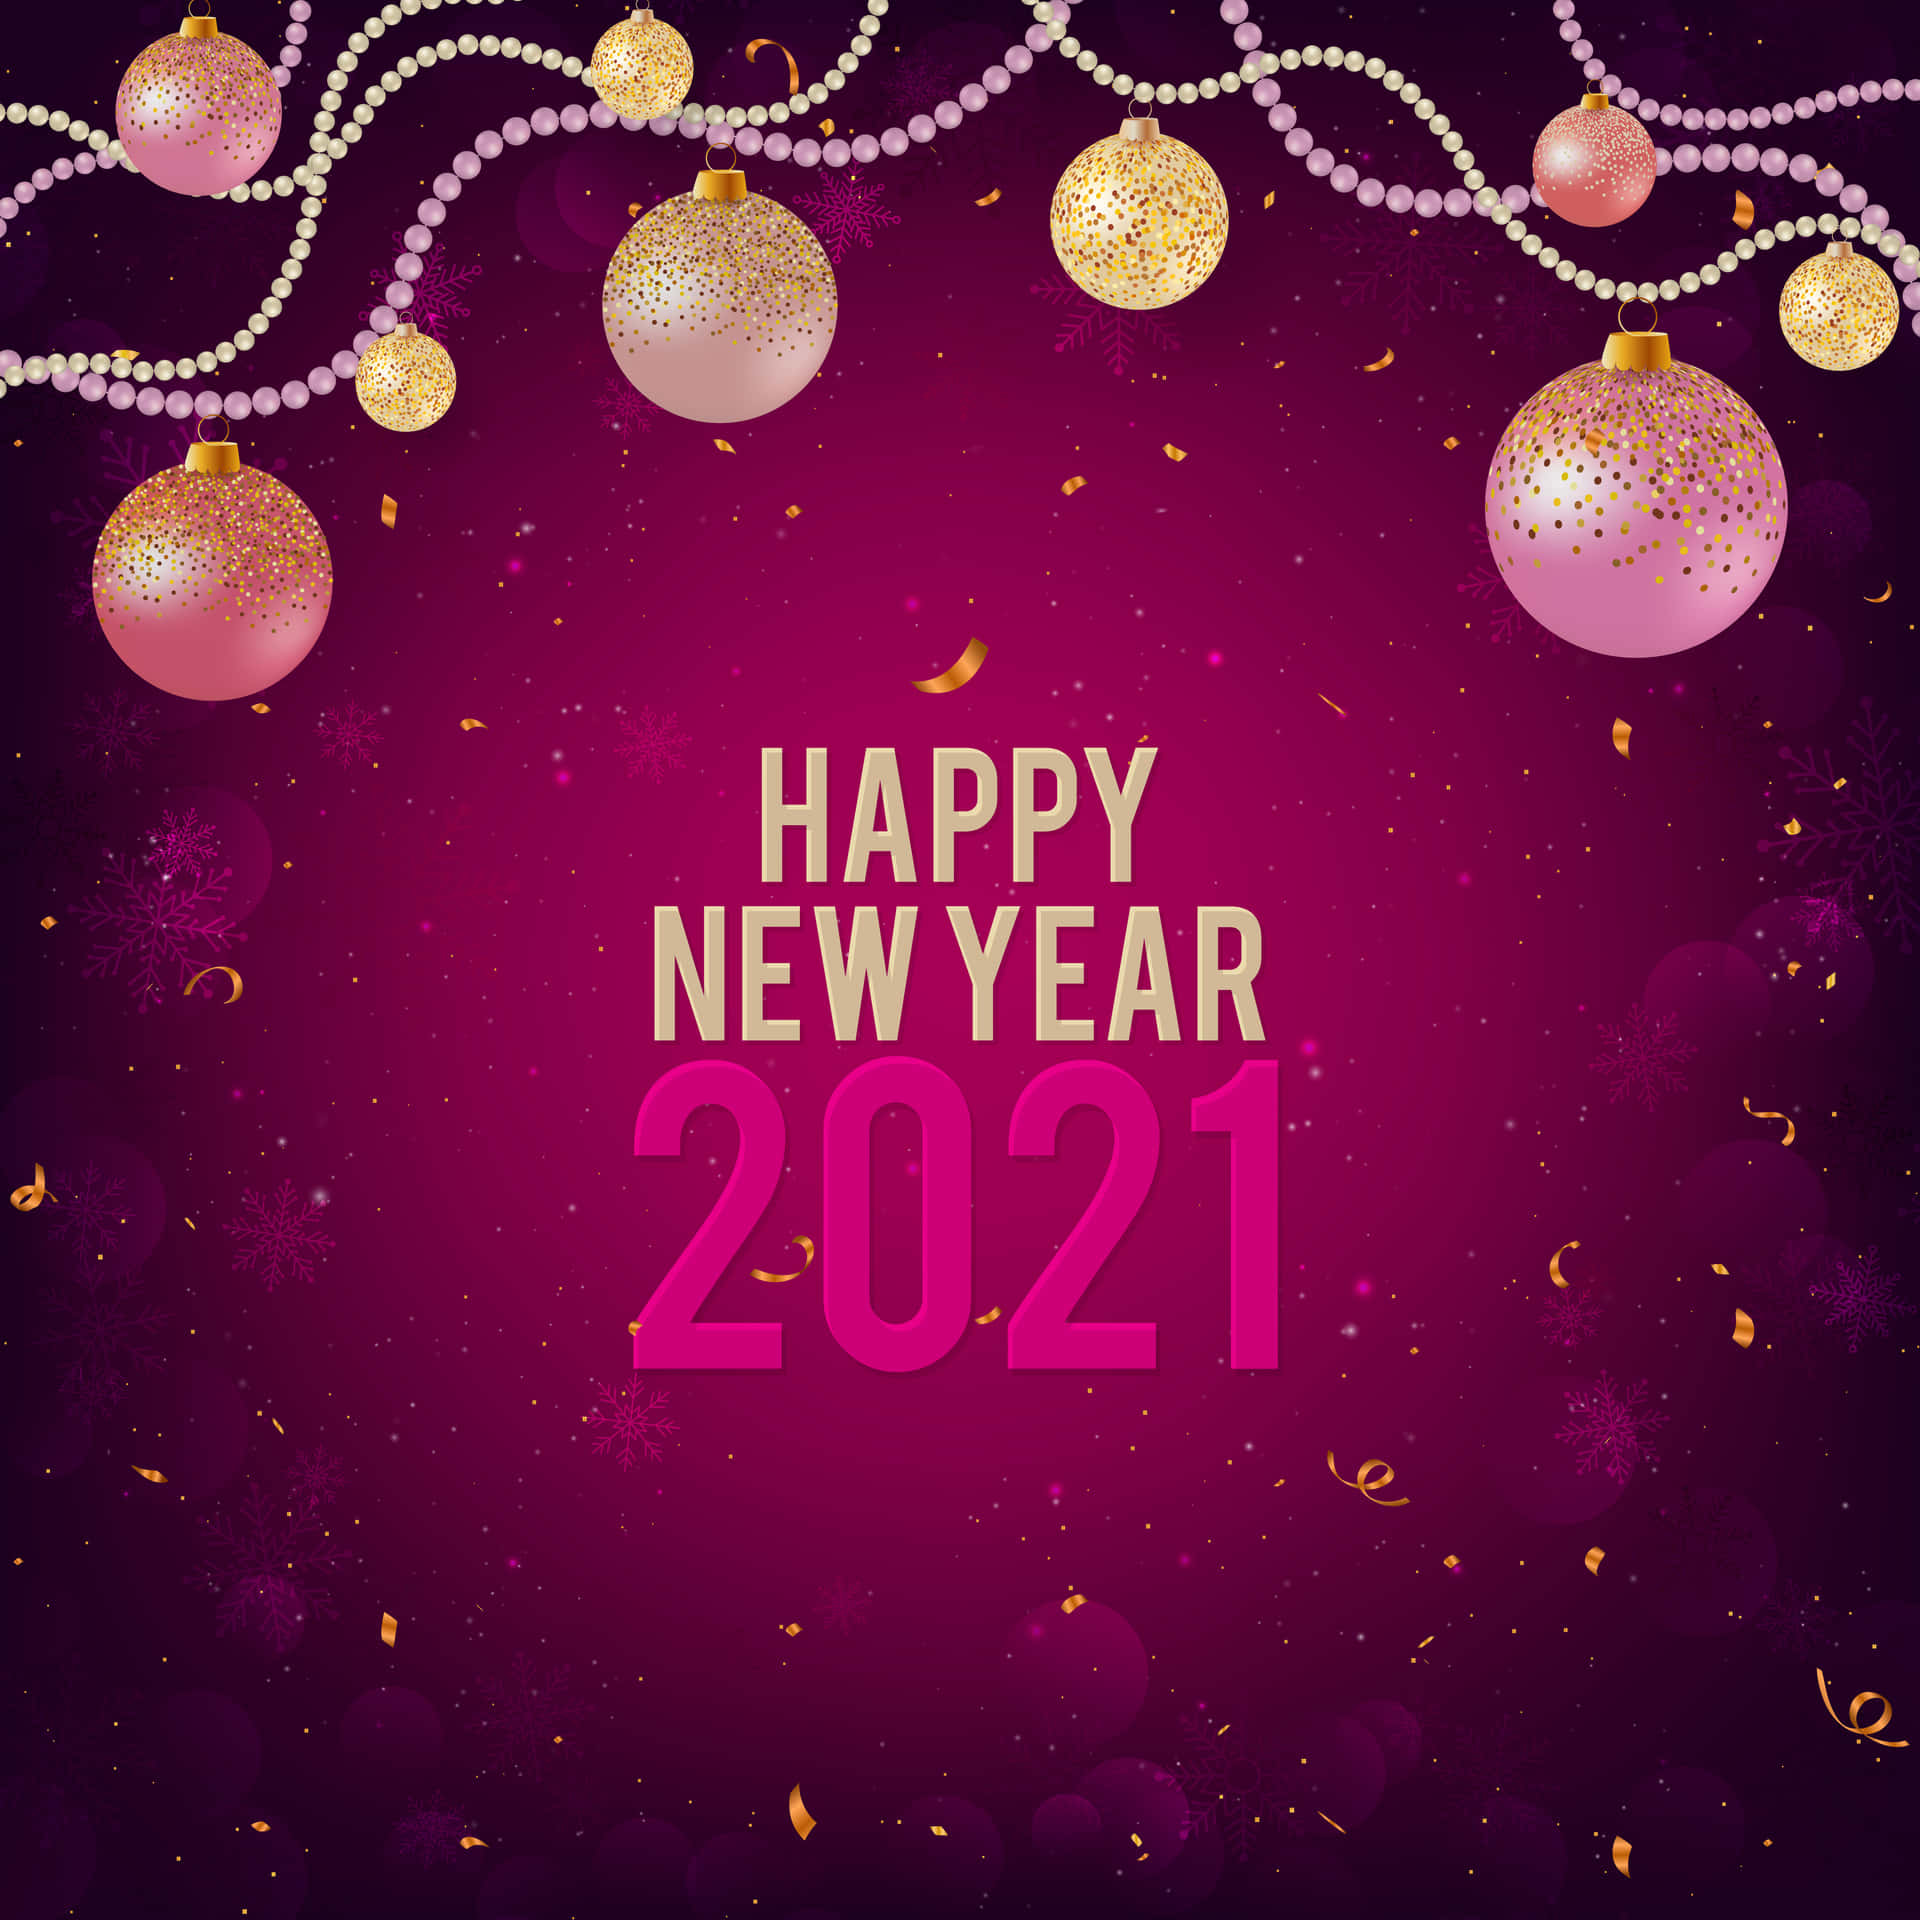 Startensie Ihr Jahr 2021 Auf Dem Richtigen Fuß Mit Diesem Super Sonnigen Wallpaper Zum Glücklichen Neuen Jahr 2021! Wallpaper